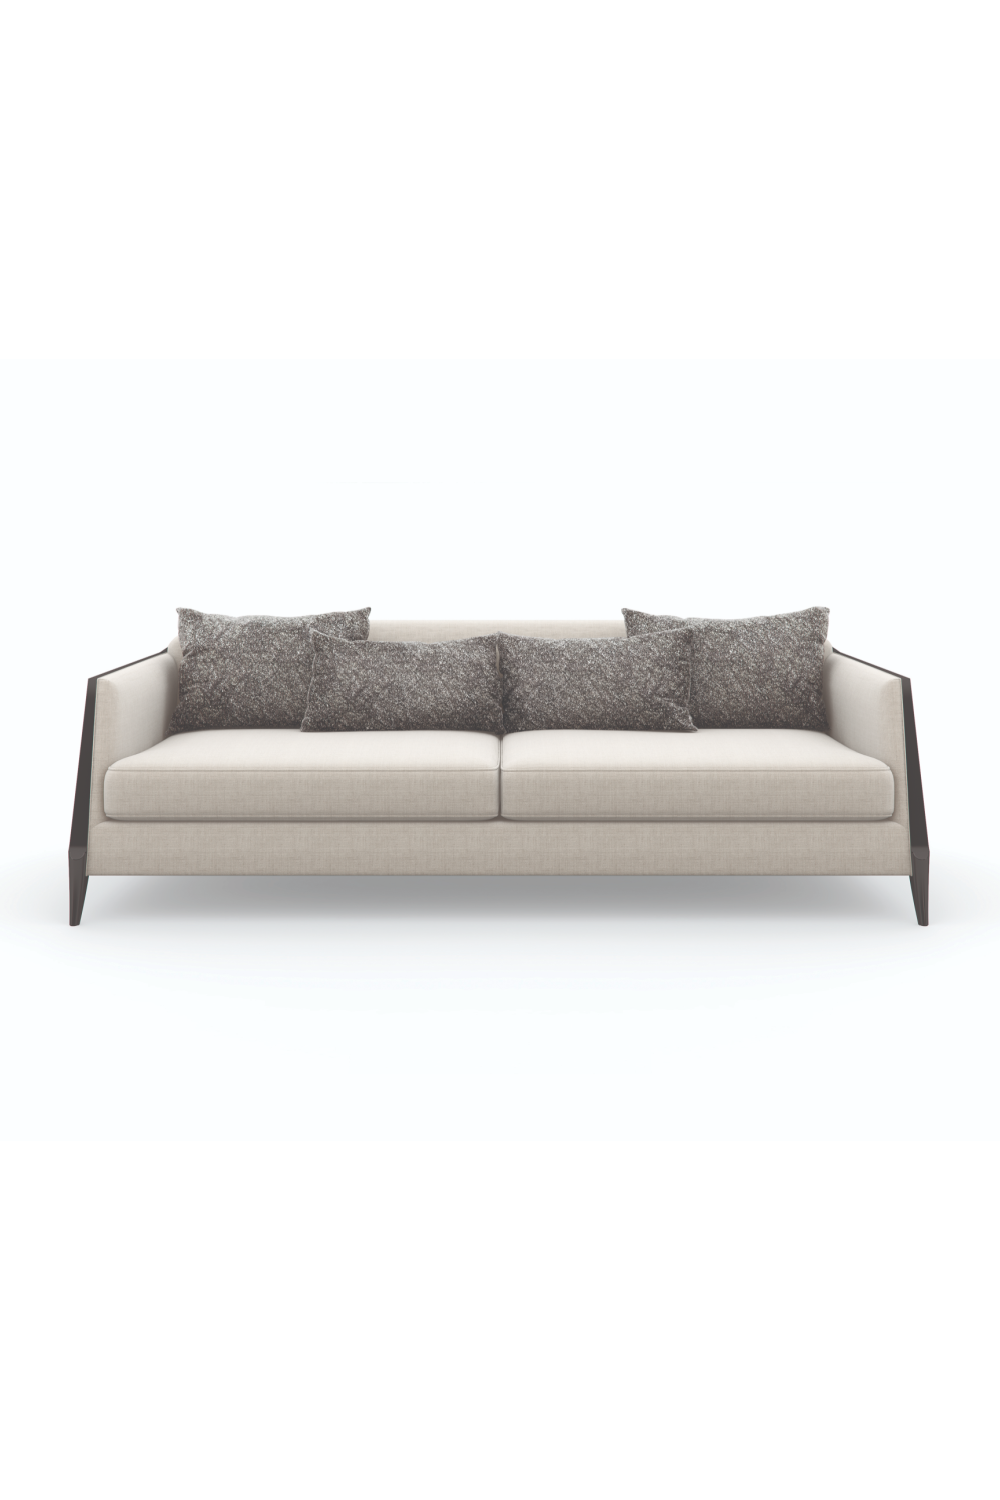 Cream Modern Sofa | Caracole Outline | Oroa.com